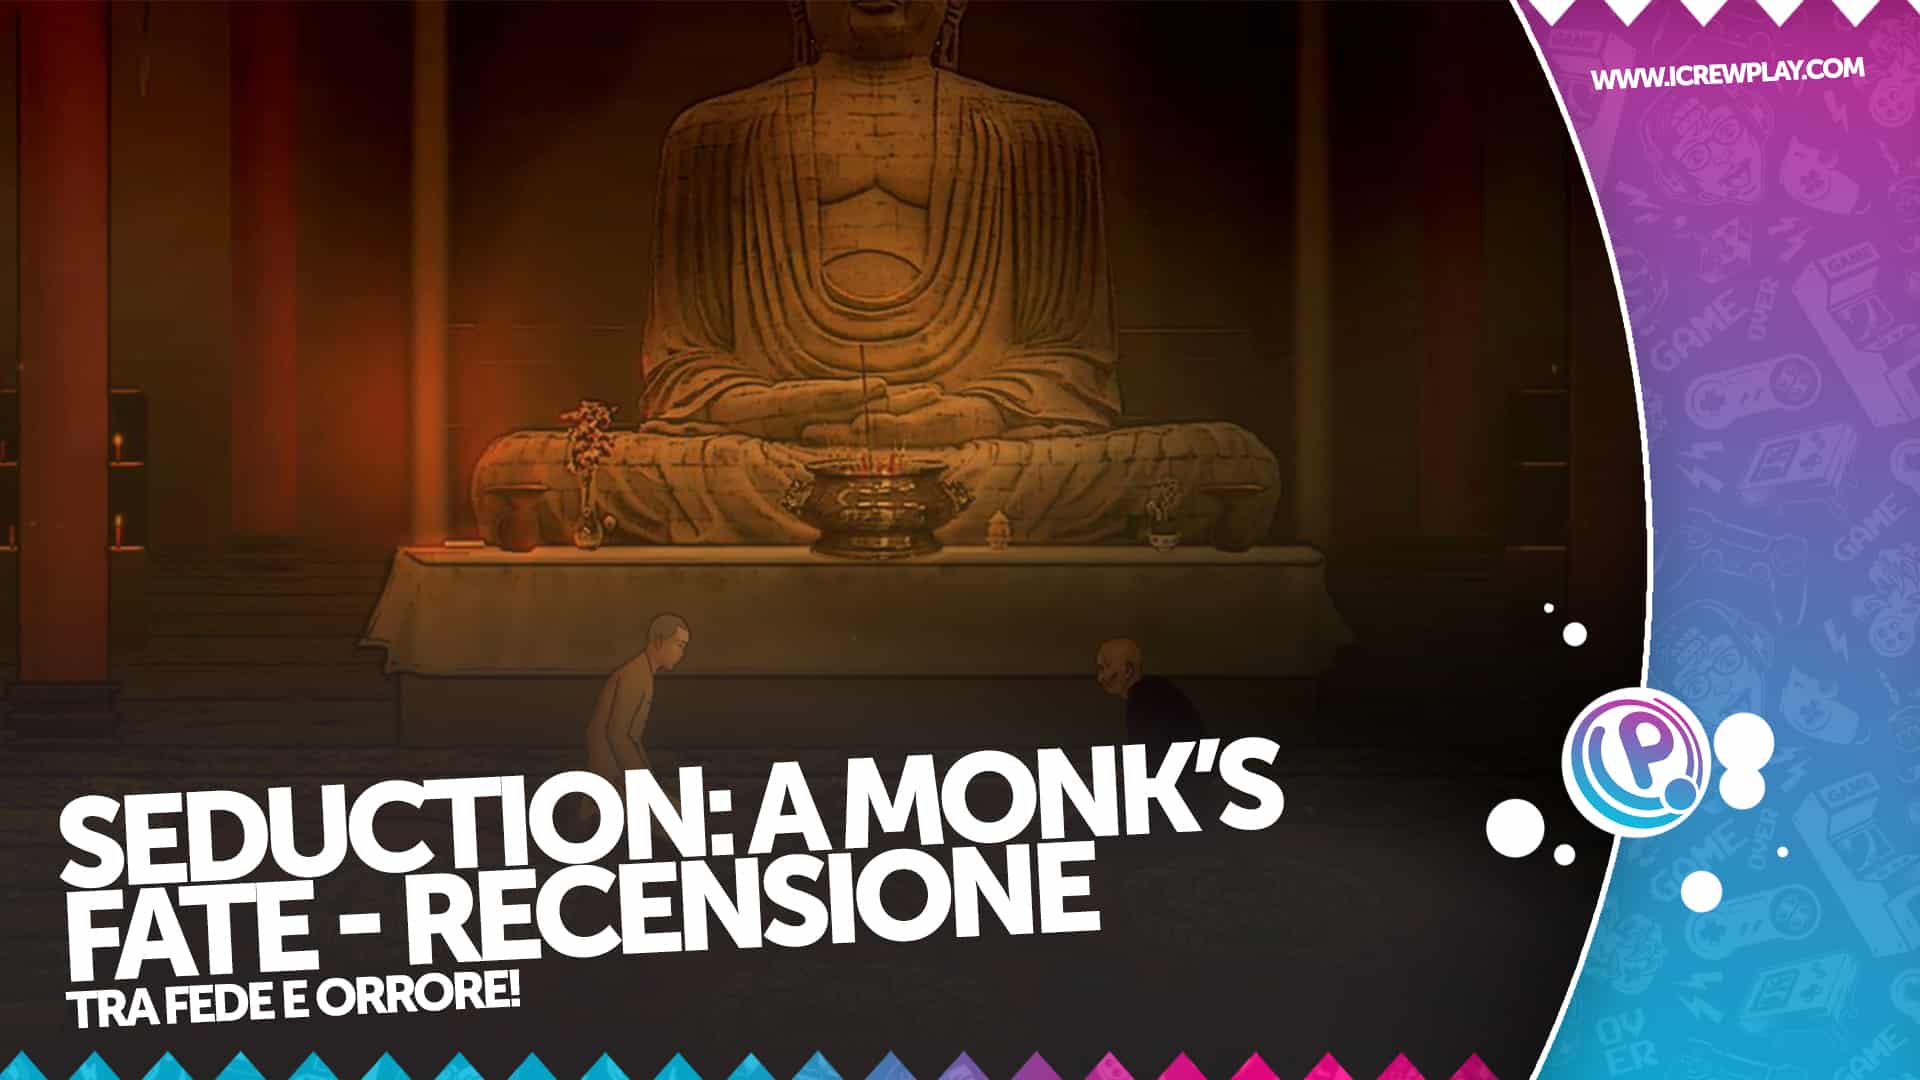 Seduction: A Monk's Fate - Recensione per Nintendo Switch 16